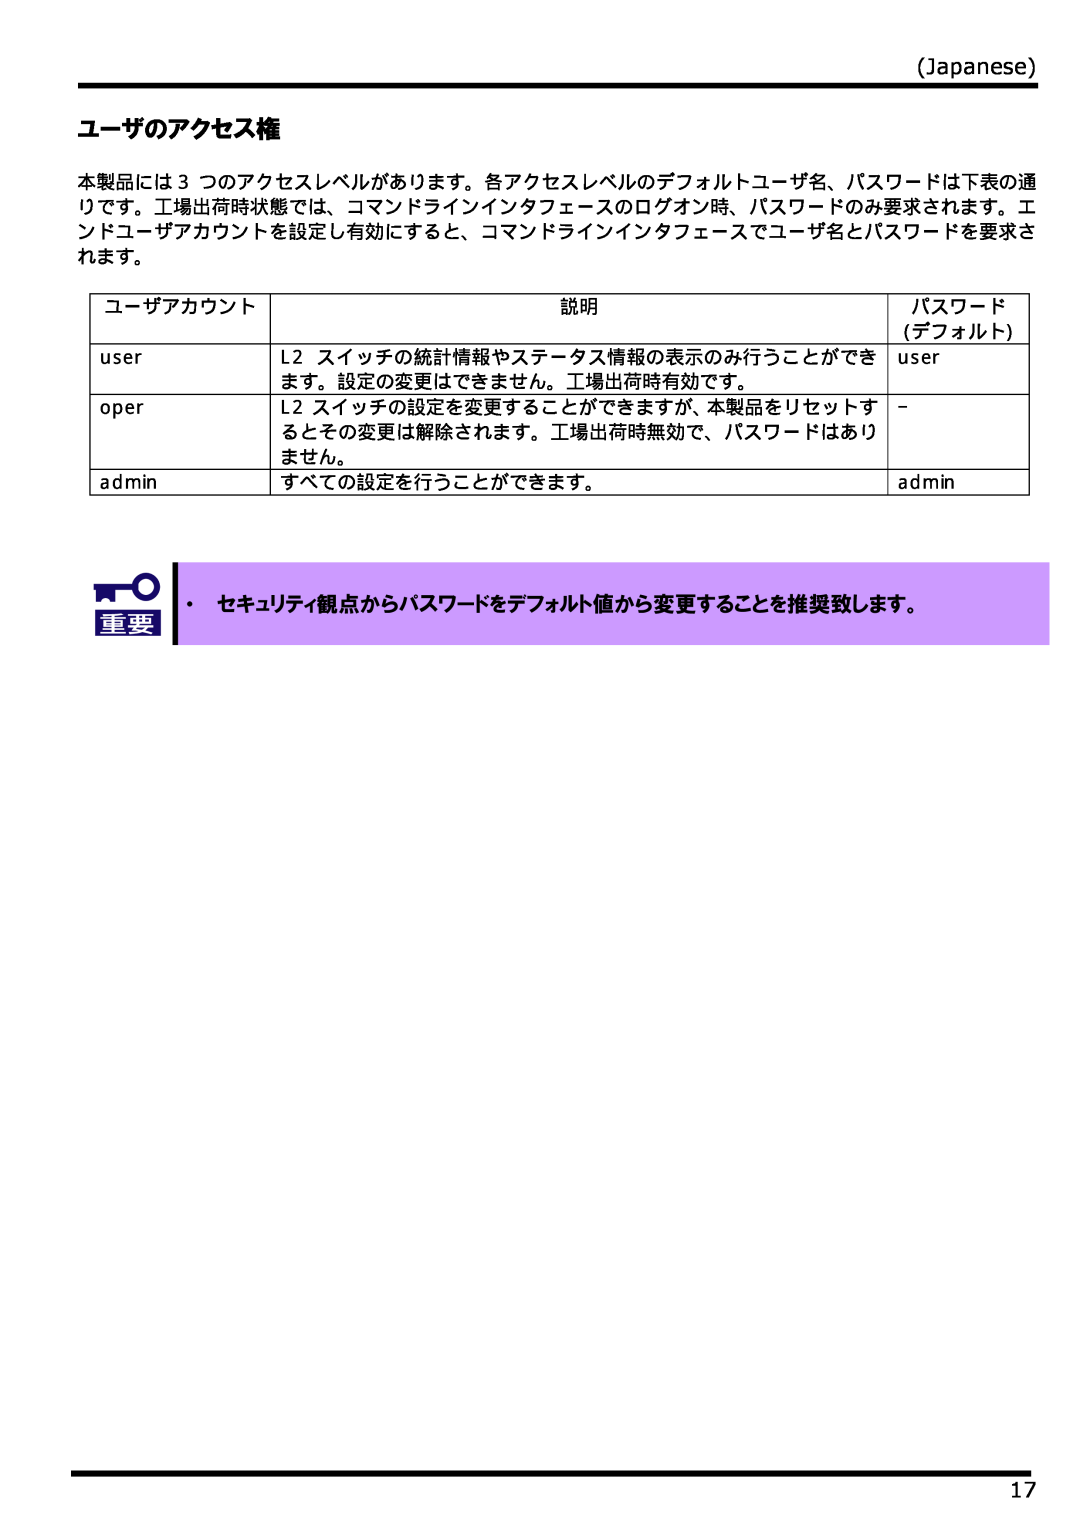 NEC N8406-022 manual ユーザのアクセス権, Japanese, ・ セキュリティ観点からパスワードをデフォルト値から変更することを推奨致します。 